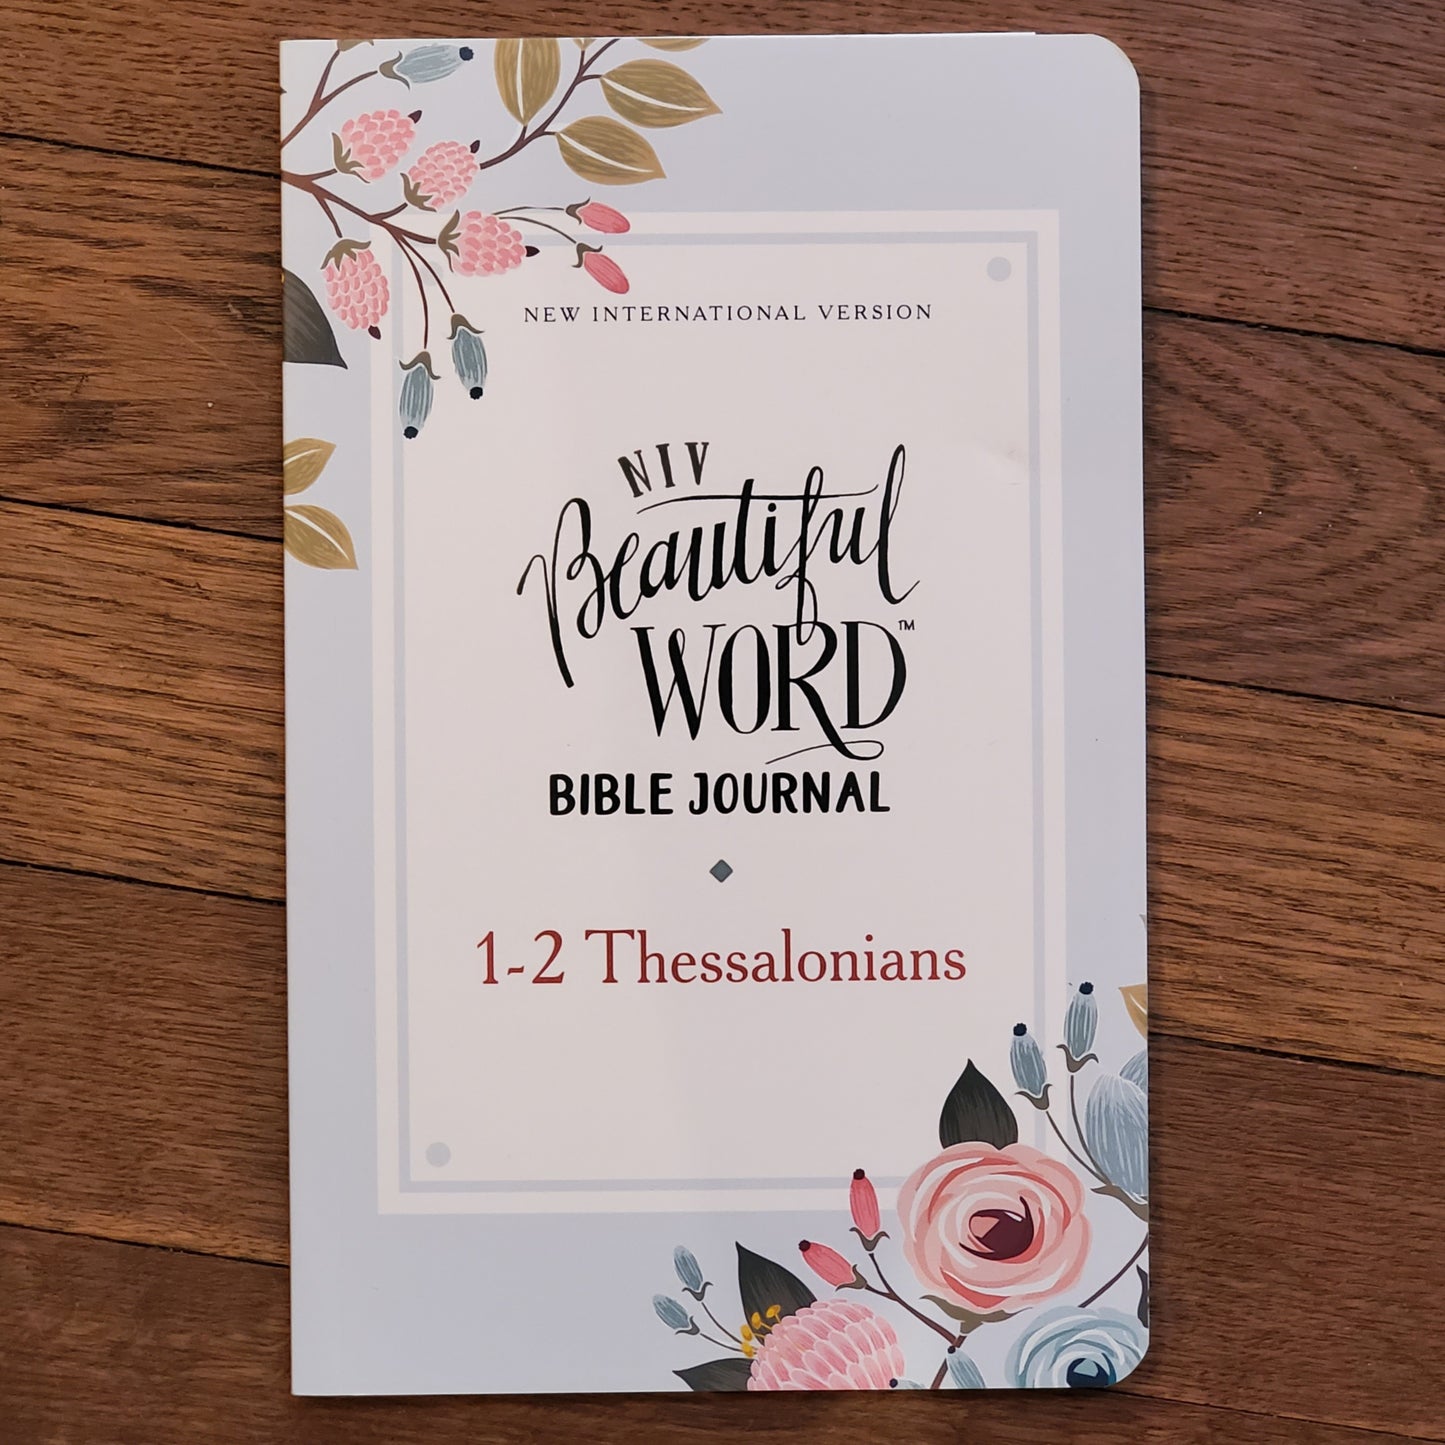 NIV Beautiful Word Bible Journal 1-2 Thessalonians